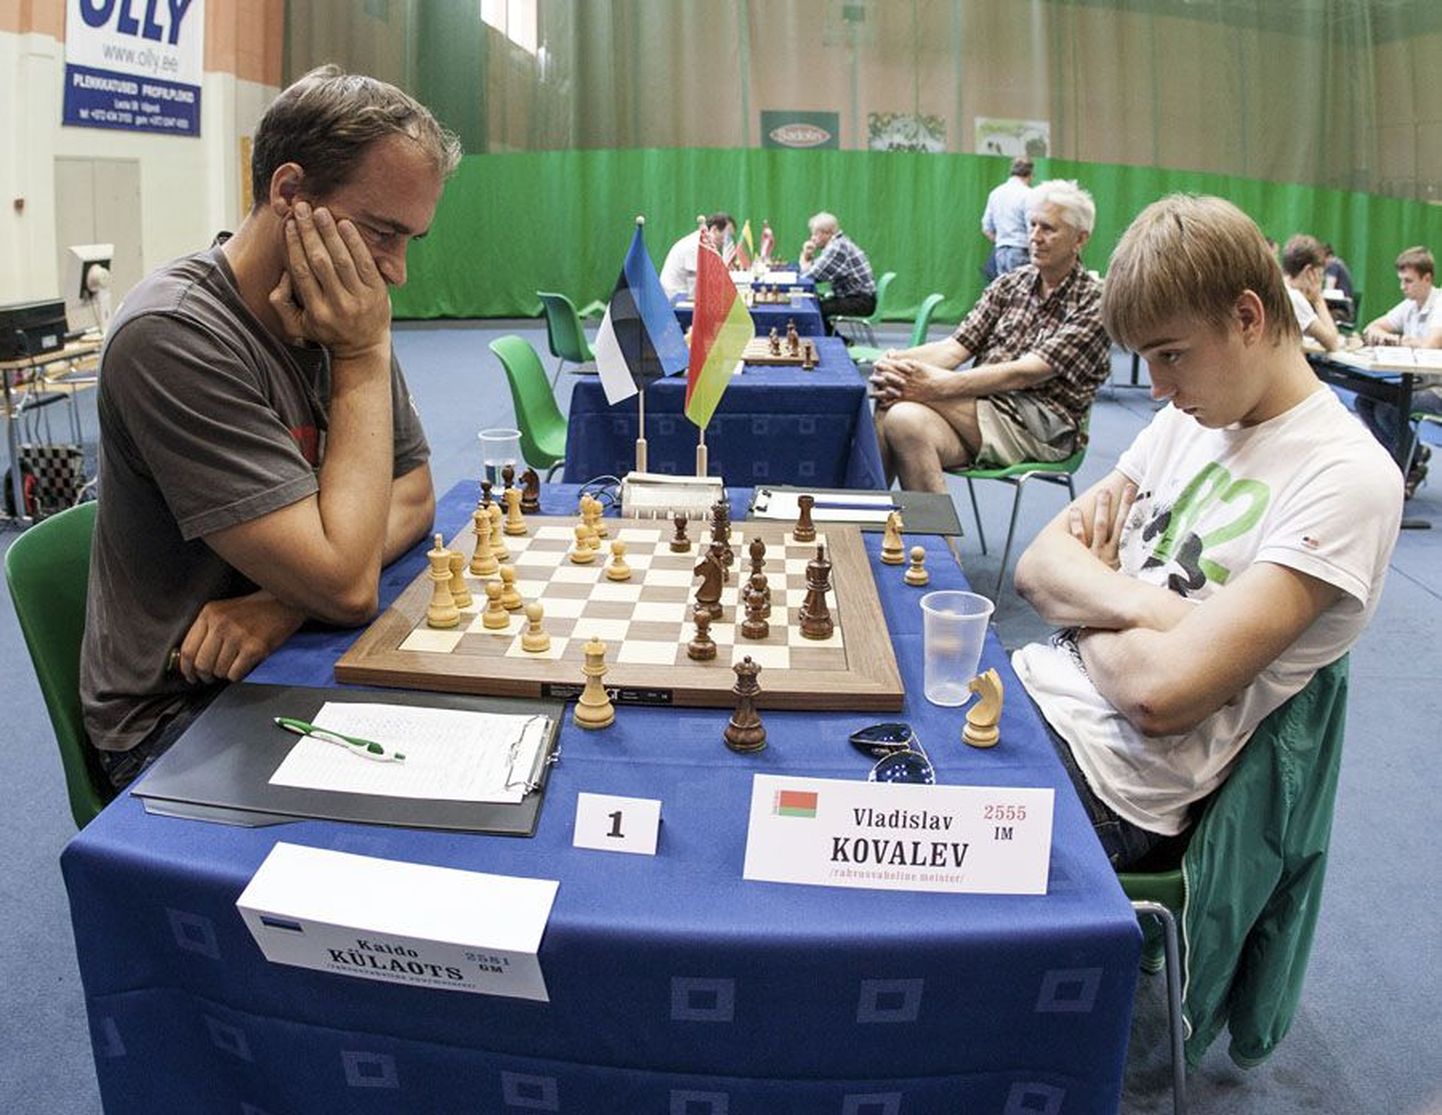 Eelmisel aastal võitis turniiri rahvusvaheline suurmeister Vladislav Kovalev (paremal) Valgevenest. Tänavu asub ta oma mullust võitu kaitsma.